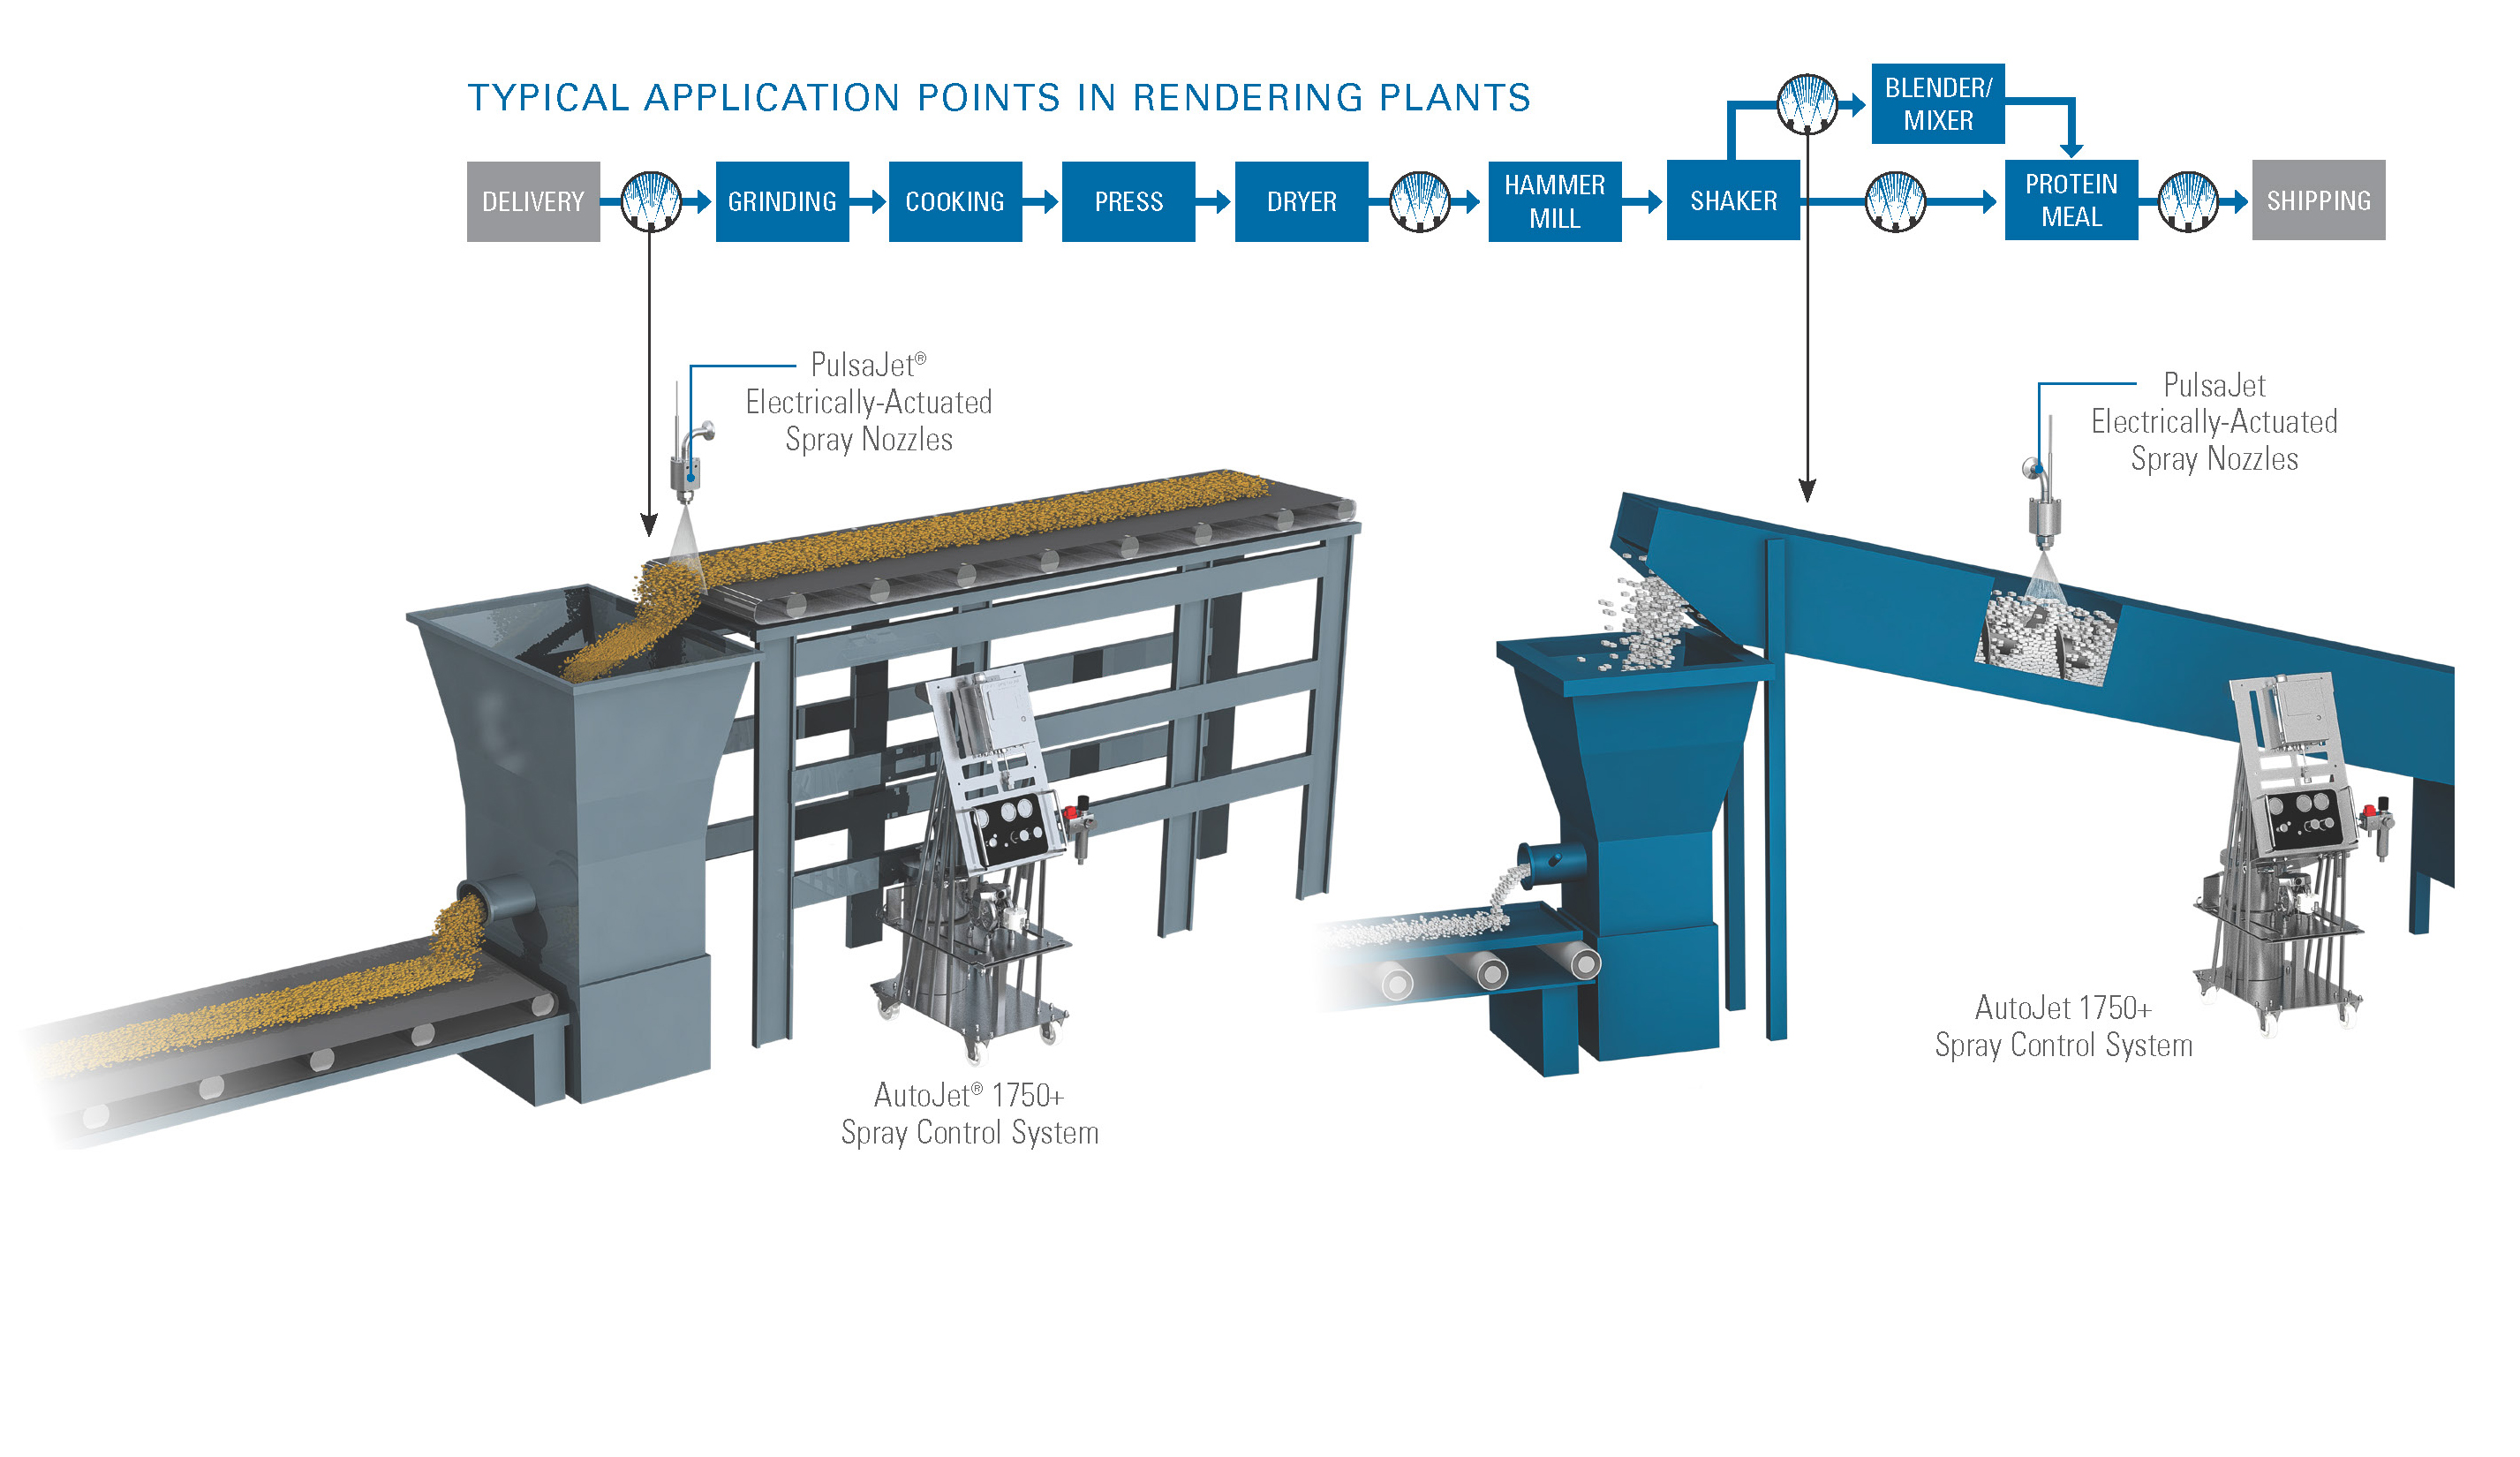 Sistemas de pulverización AutoJet utilizados en plantas de renderizado